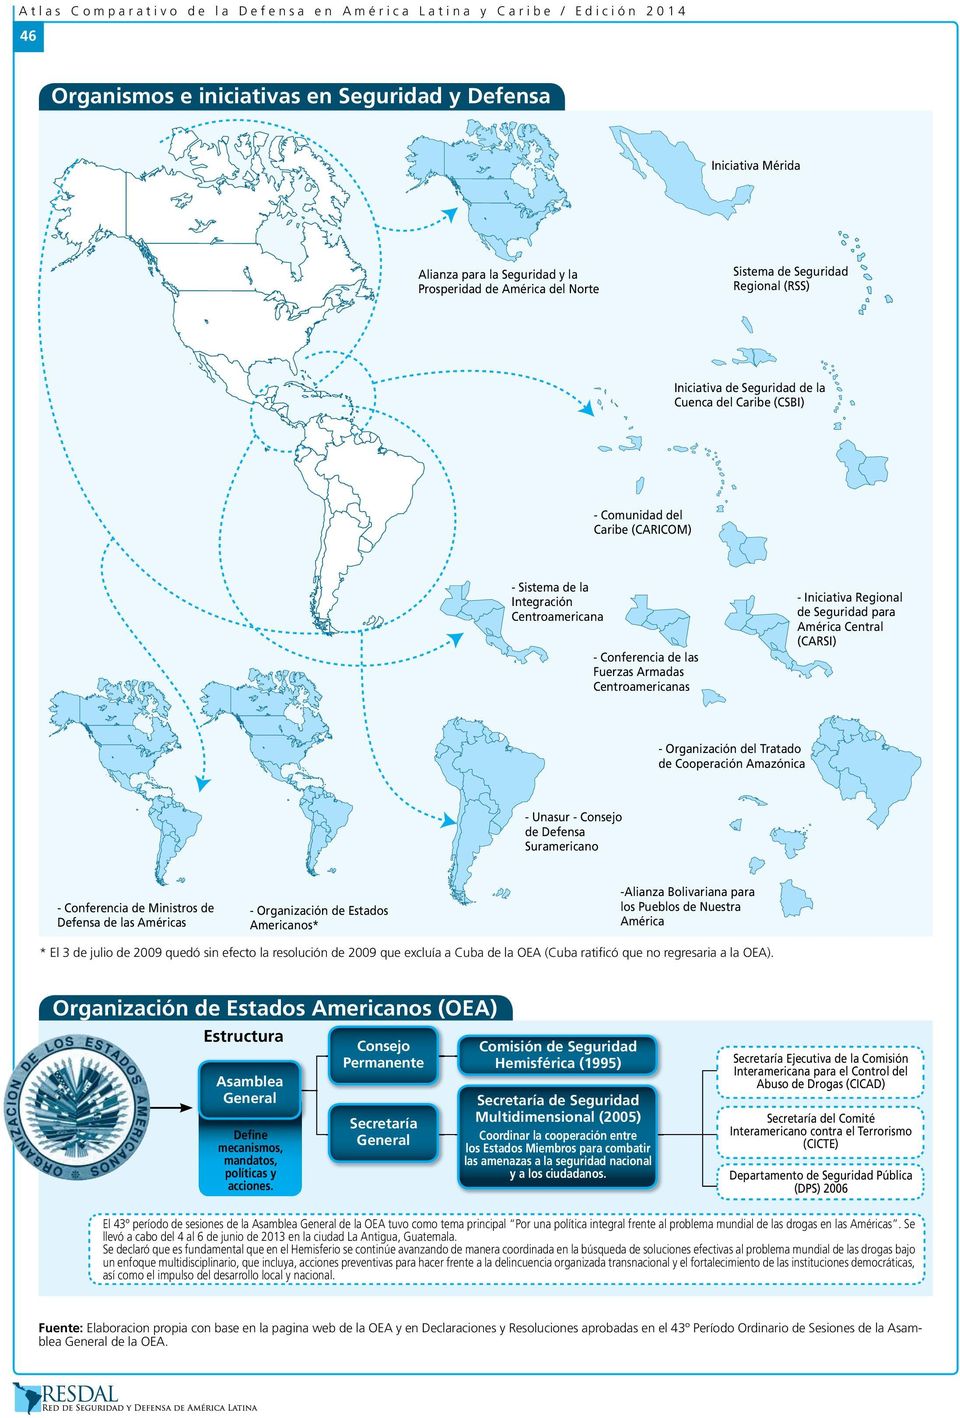 Fuerzas Armadas Centroamericanas - Iniciativa Regional de Seguridad para América Central (CARSI) - Organización del Tratado de Cooperación Amazónica - Unasur - Consejo de Defensa Suramericano -